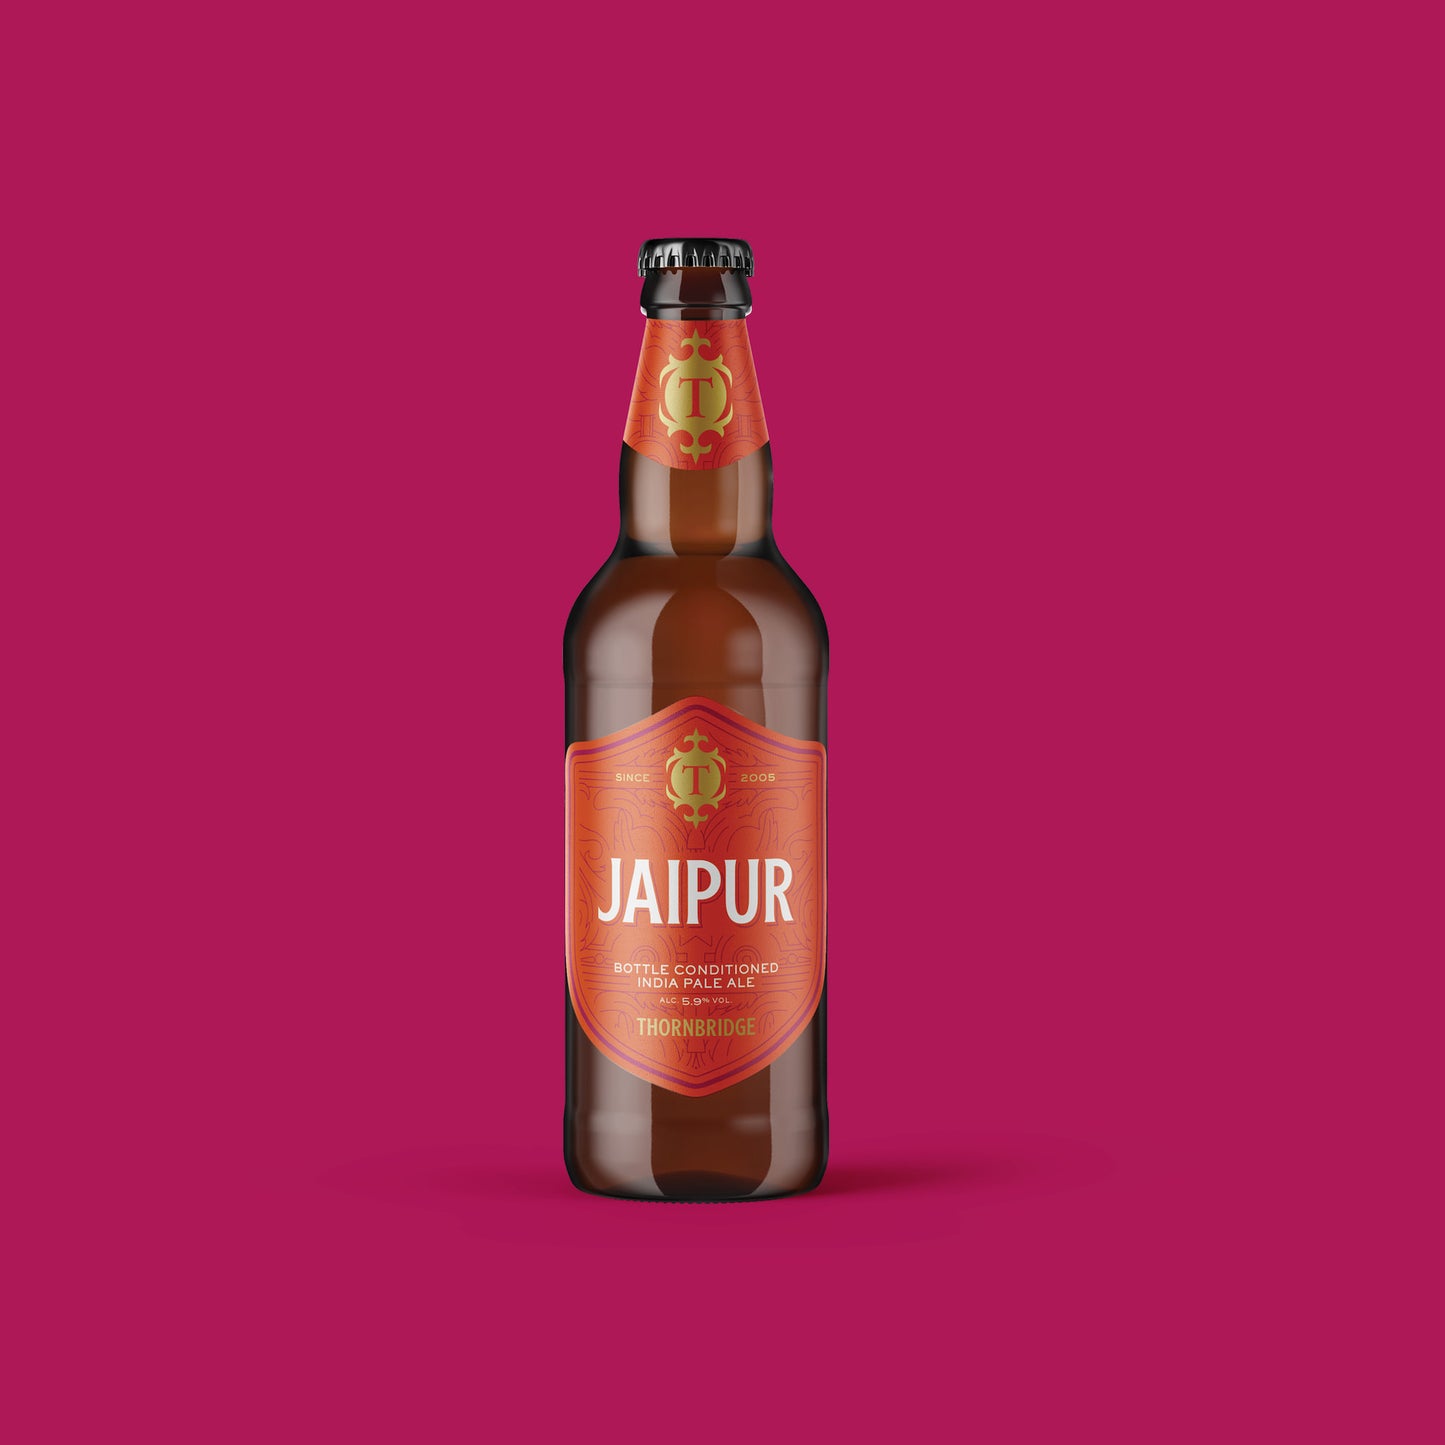 Jaipur, 500ml Bottle, 5.9% IPA Beer - Single Bottle Thornbridge